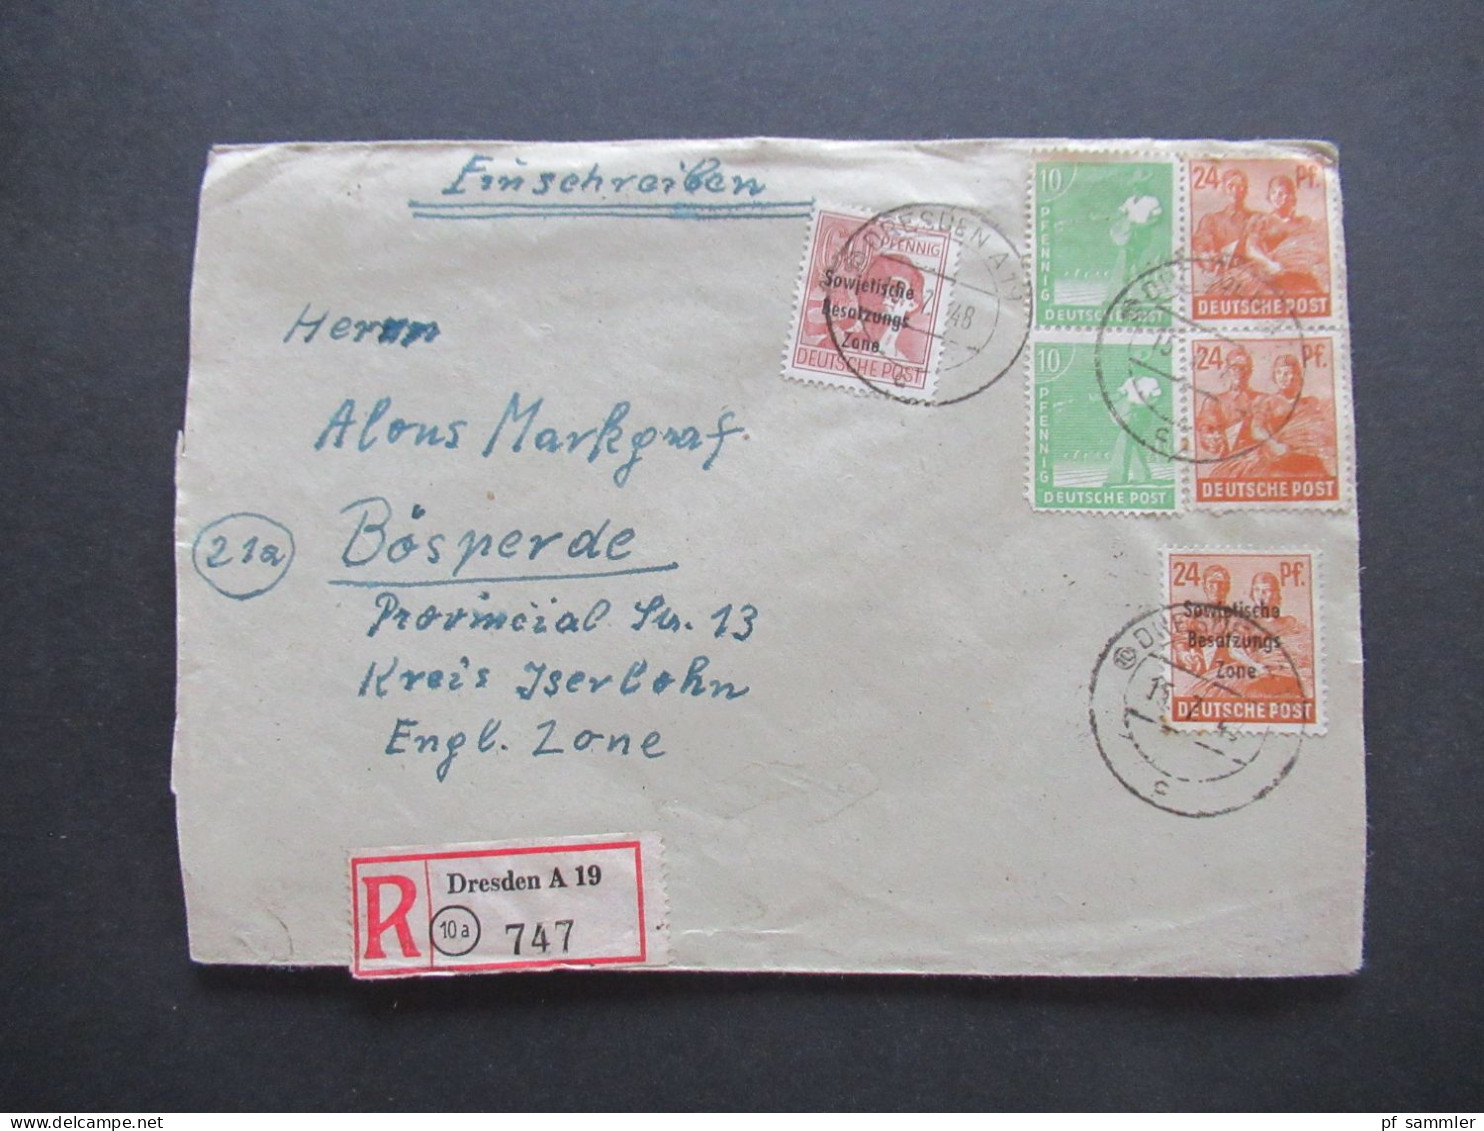 15.7.1948 SBZ MiF Marken Mit Aufdruck Und Kontrollrat Einschreiben Dresden A 19 - Bösperde Westfalen Mit Ank. Stempel - Covers & Documents